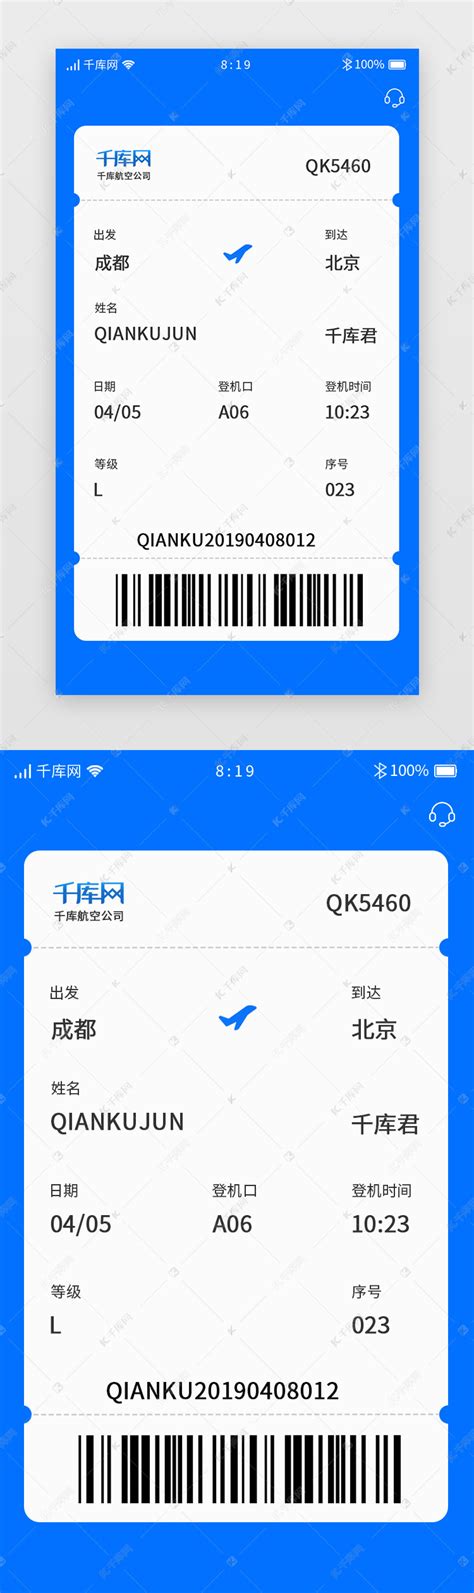 飞机票网上订票流程（教你网上订机票的4个要点流程一分钟就能轻松买到机票 ）-蓝鲸创业社